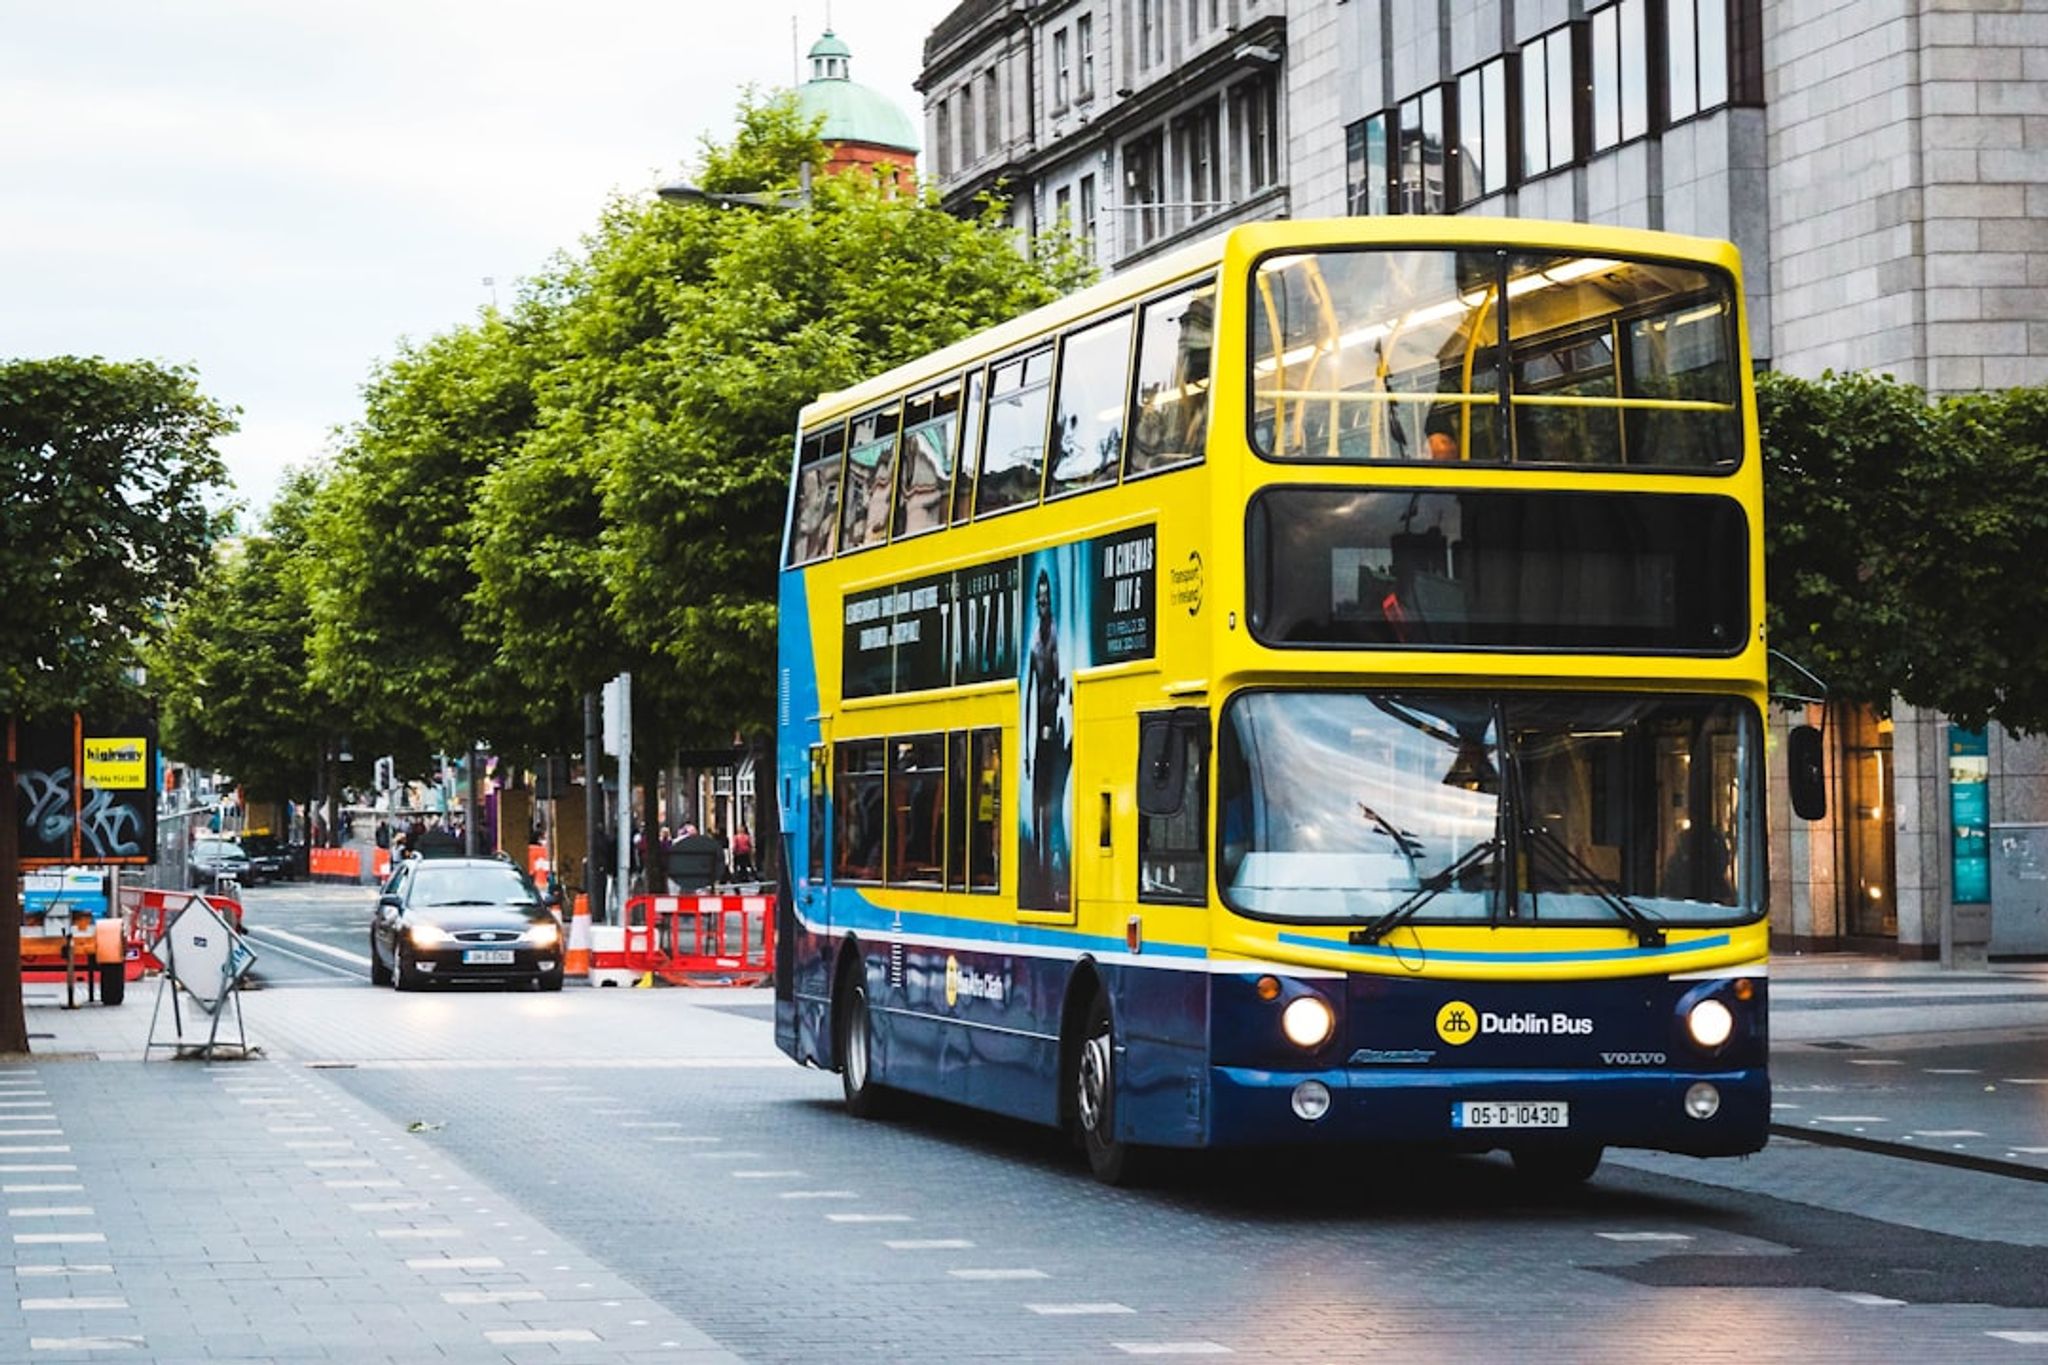 Dublin Double Decker Buses Public Transport